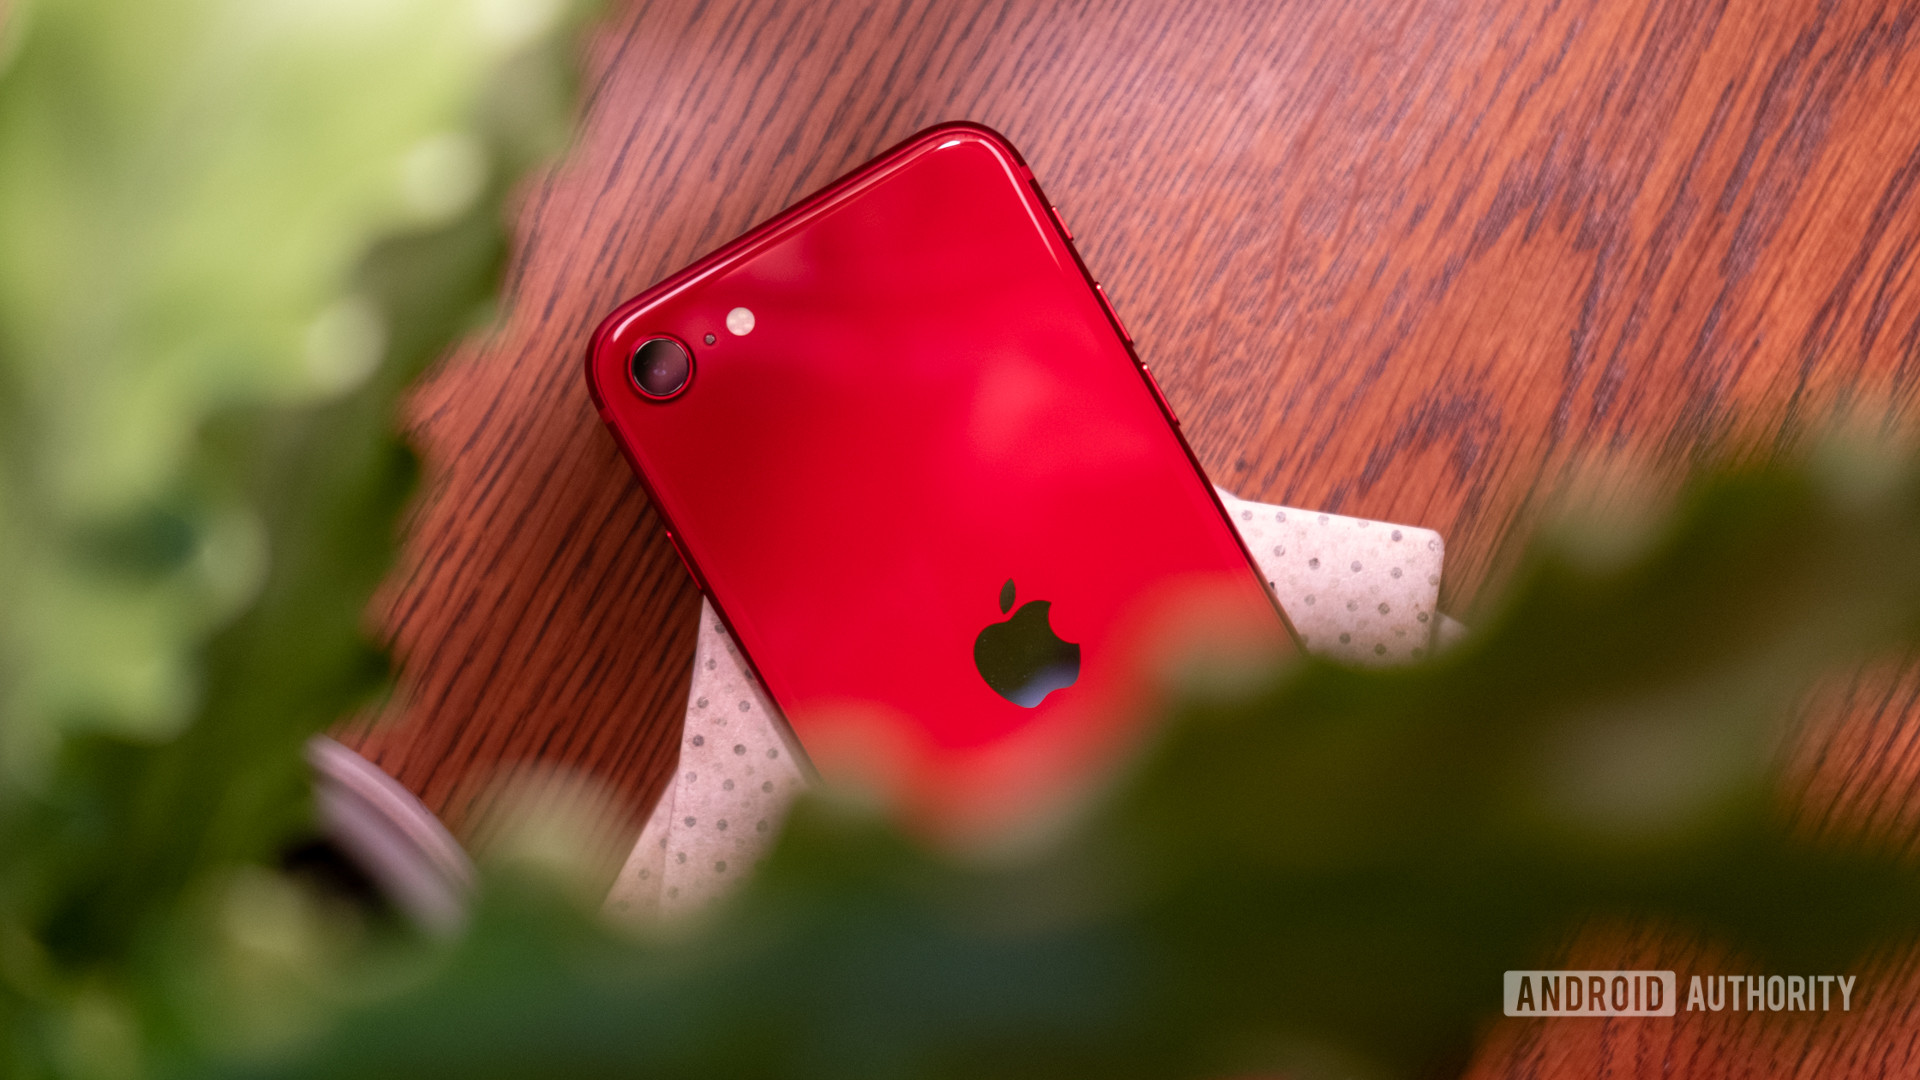 iPhone SE后方展示了前景中带有绿色植物的相机